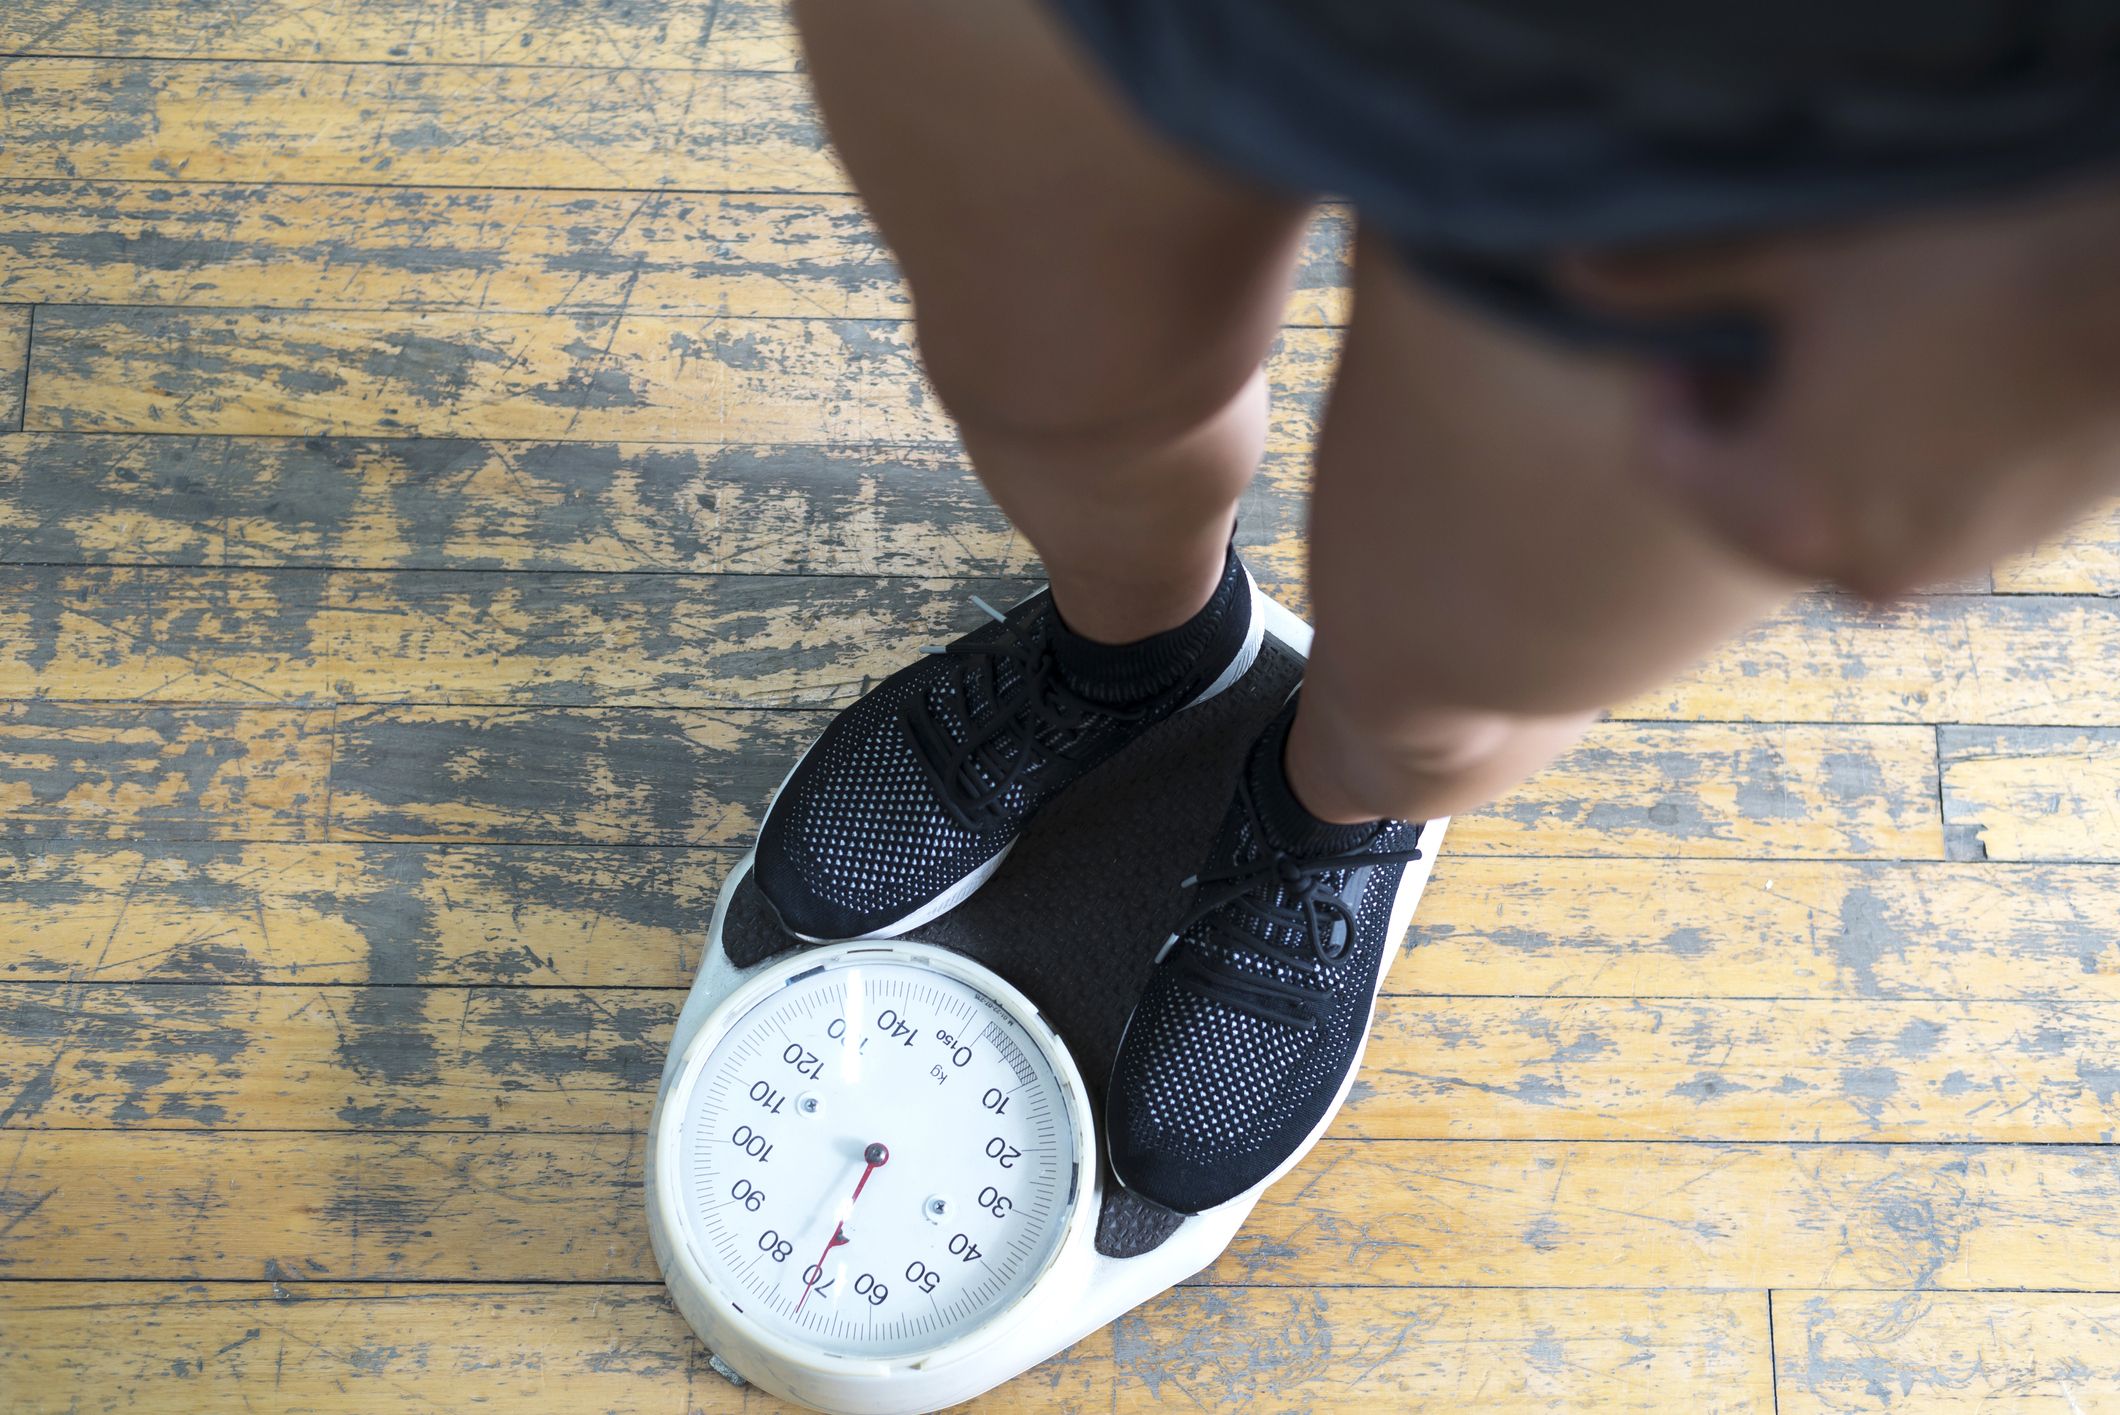 50 से बढ़कर 70 किलो हो जाएगा आपका वजन सिर्फ इन आसान टिप्स गर्मियों में वजन बढ़ाने के नुस्खे